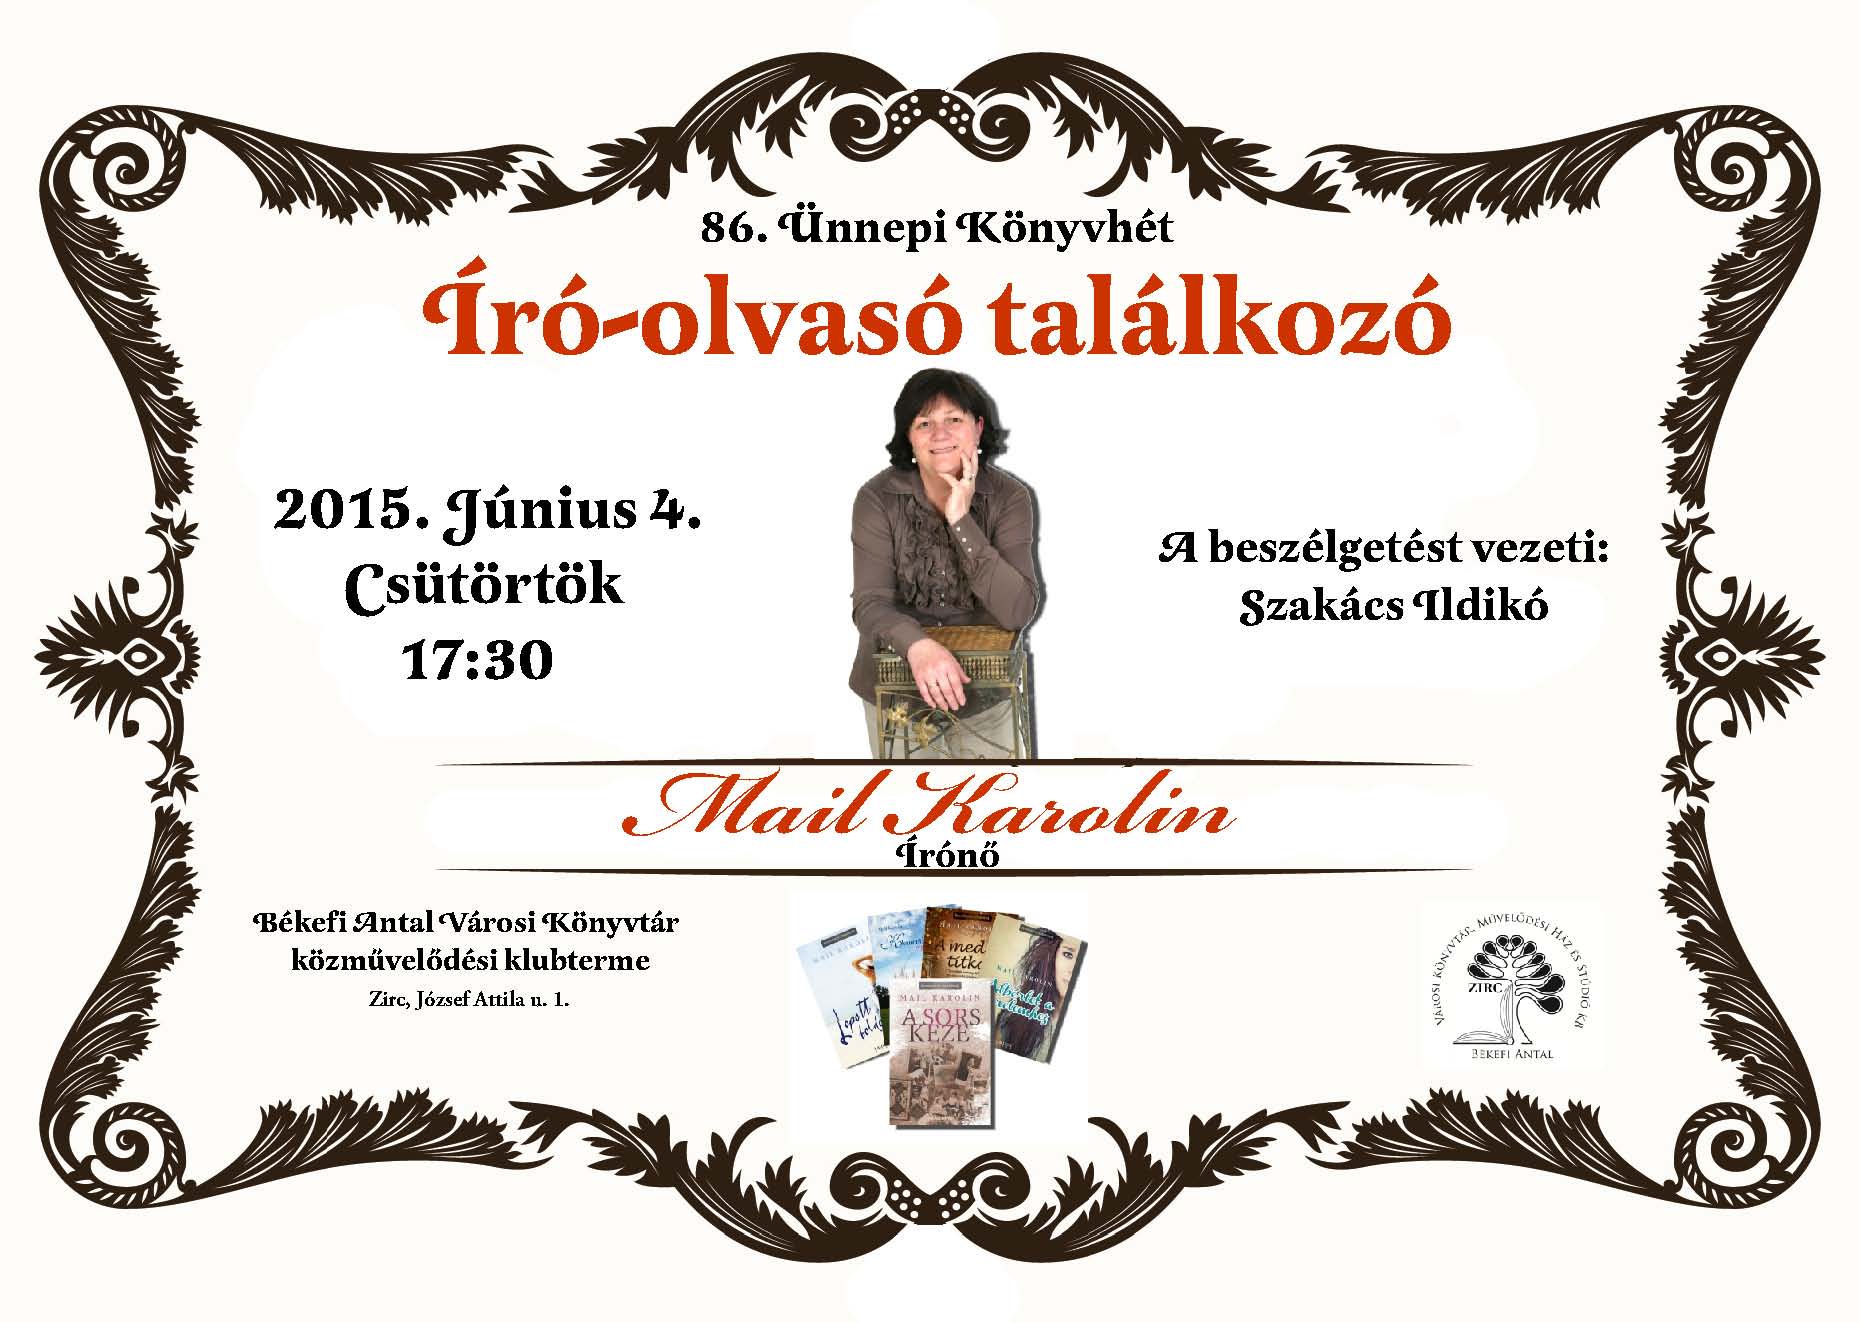 2015-06-04_iro_olvaso_talalkozo_mail_karolin.jpg